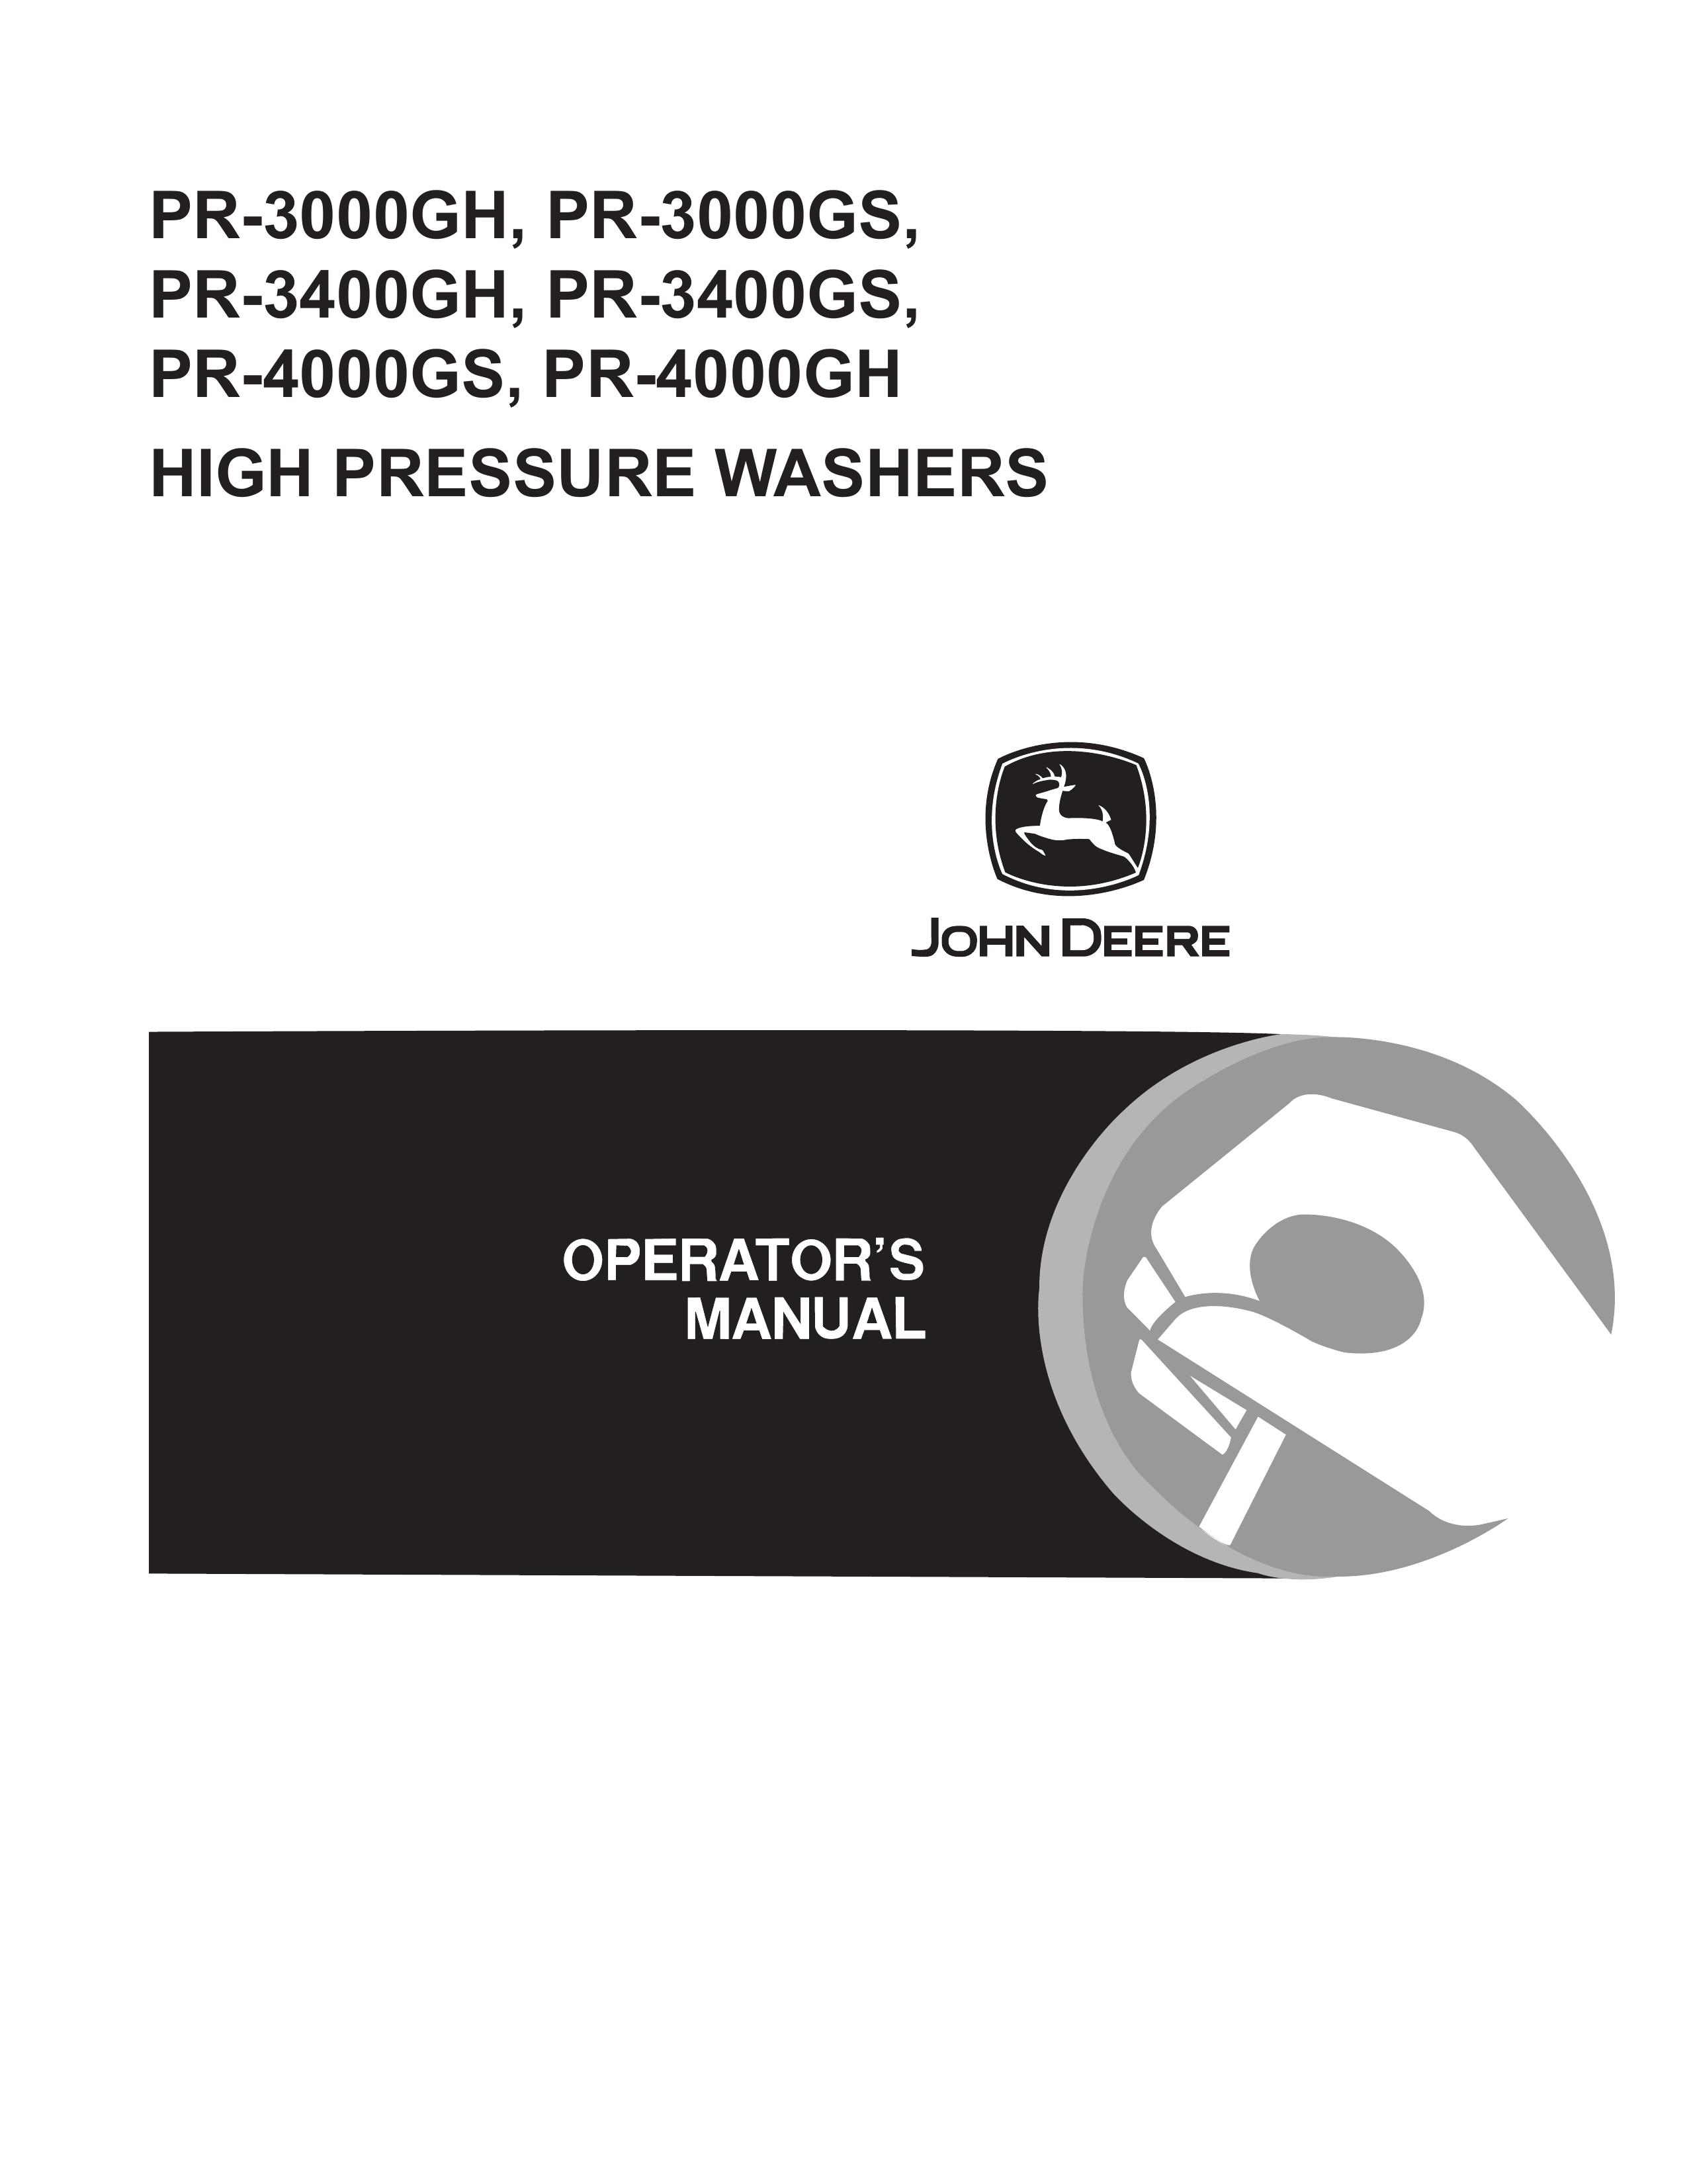 John Deere PR-4000GS Pressure Washer User Manual